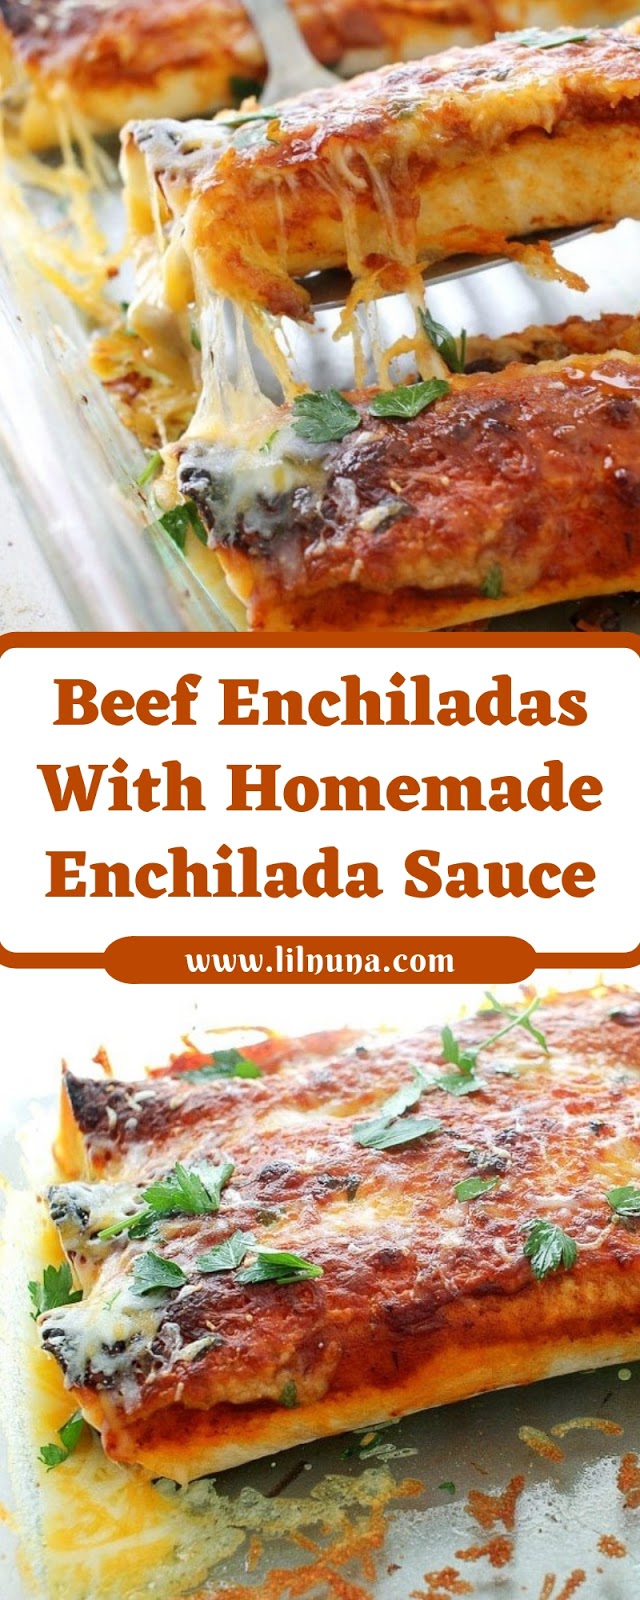 Beef Enchiladas With Homemade Enchilada Sauce